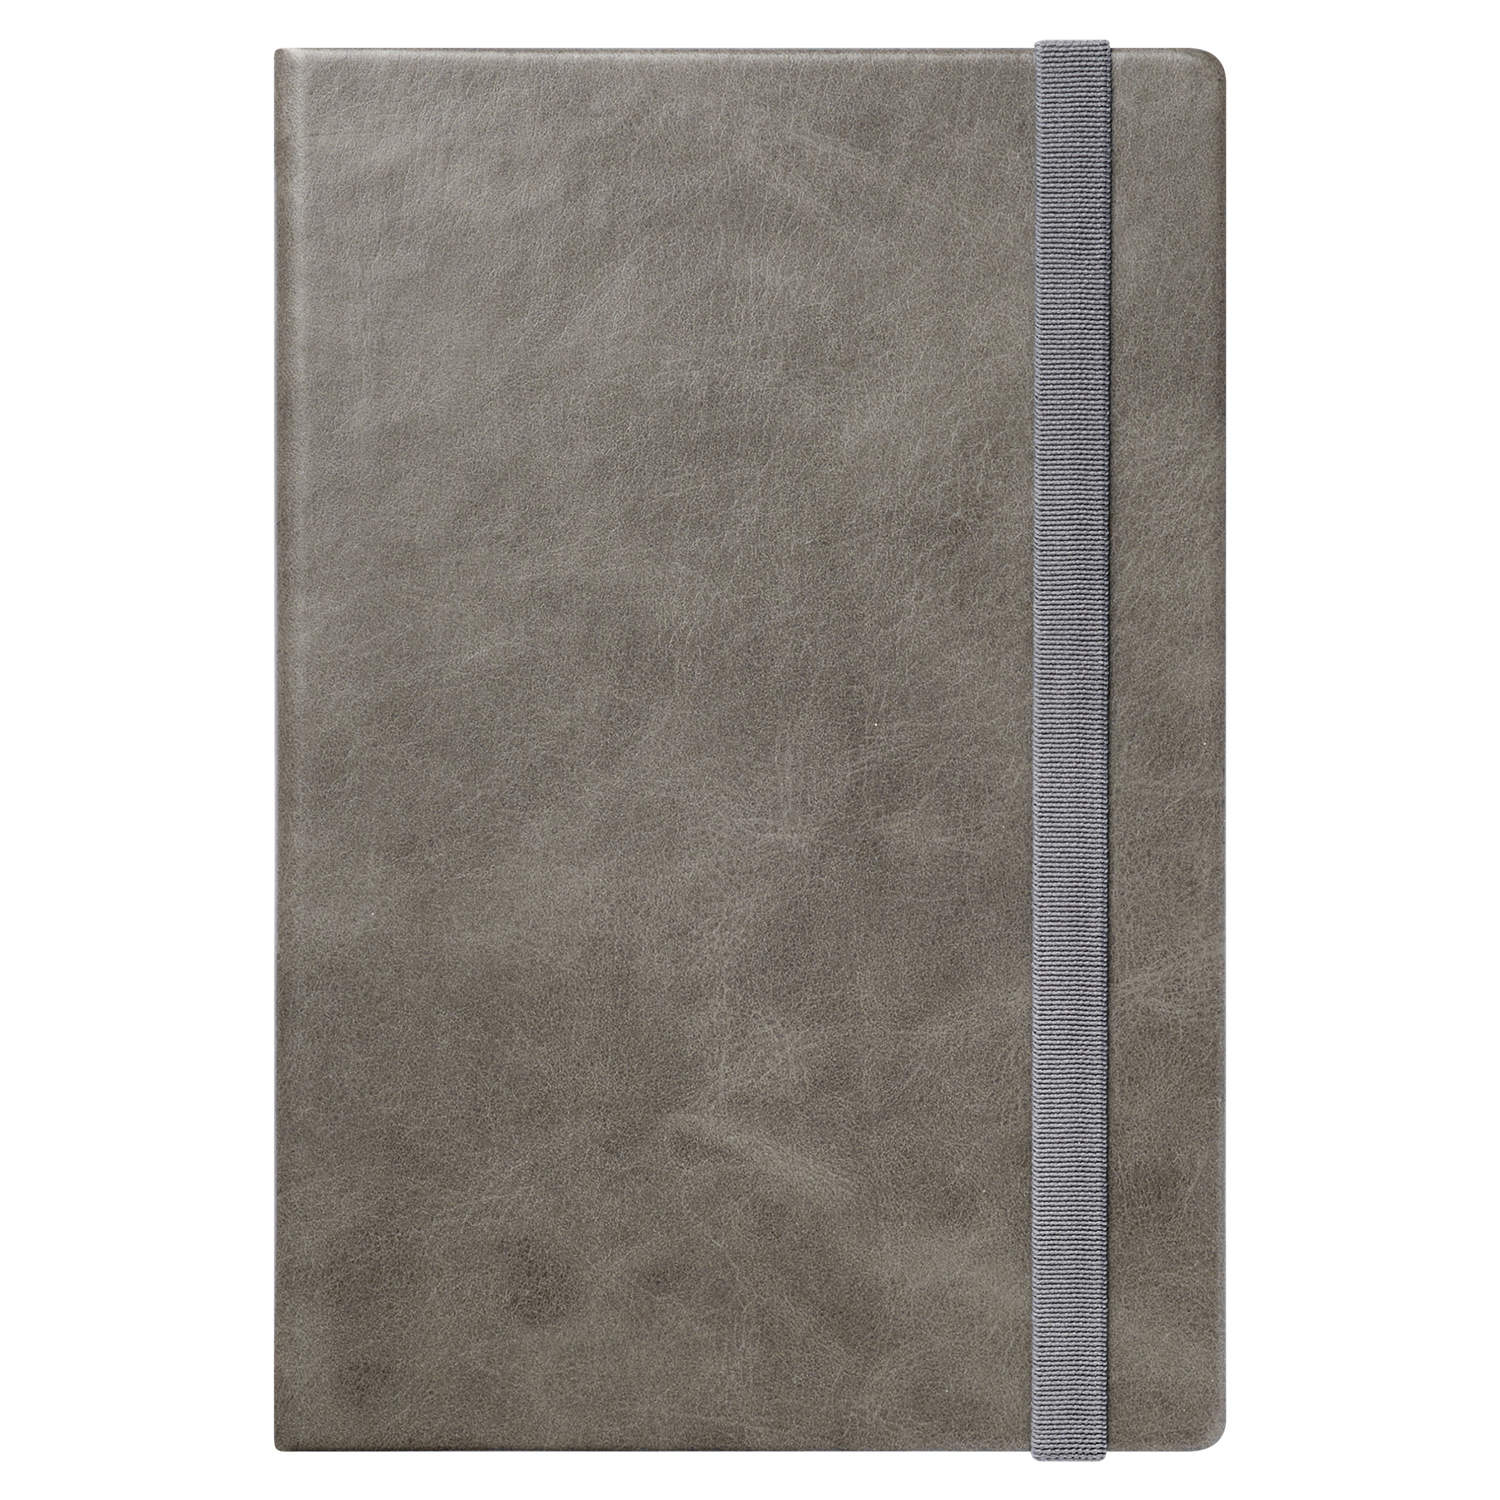 Ежедневник Vegas BtoBook недатированный, серый (без упаковки, без стикера)